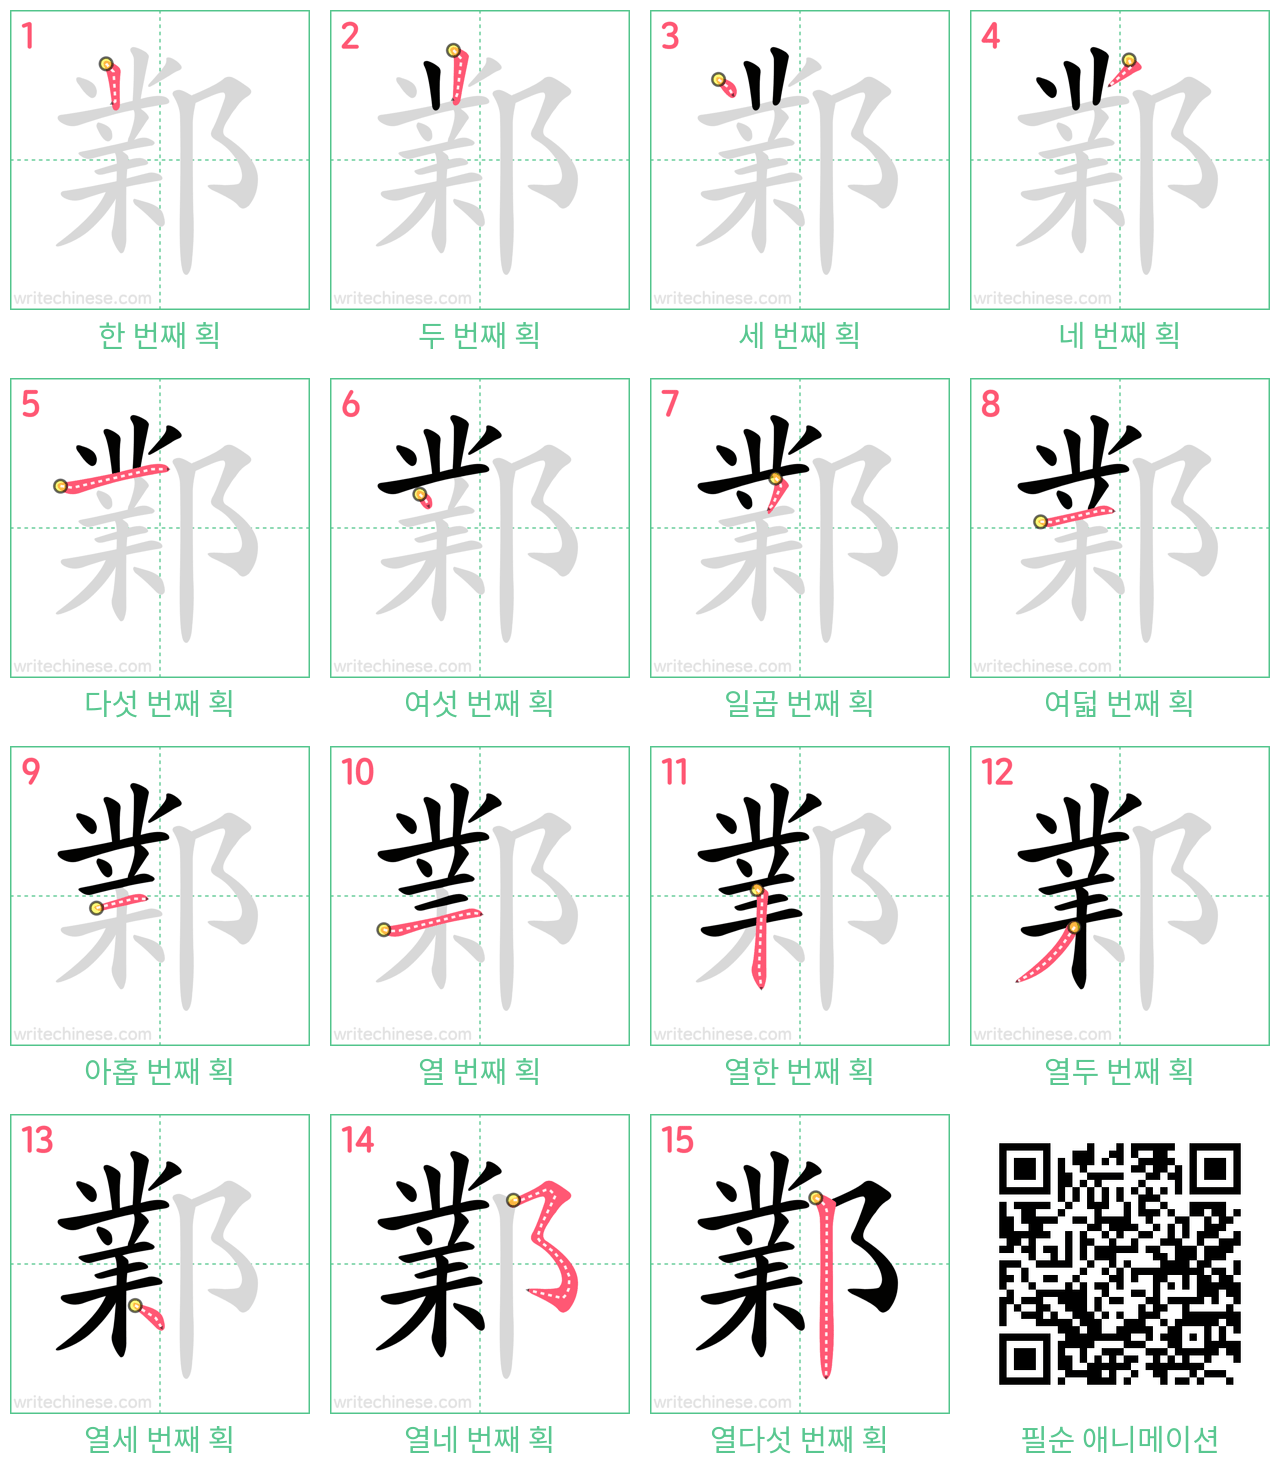 鄴 step-by-step stroke order diagrams